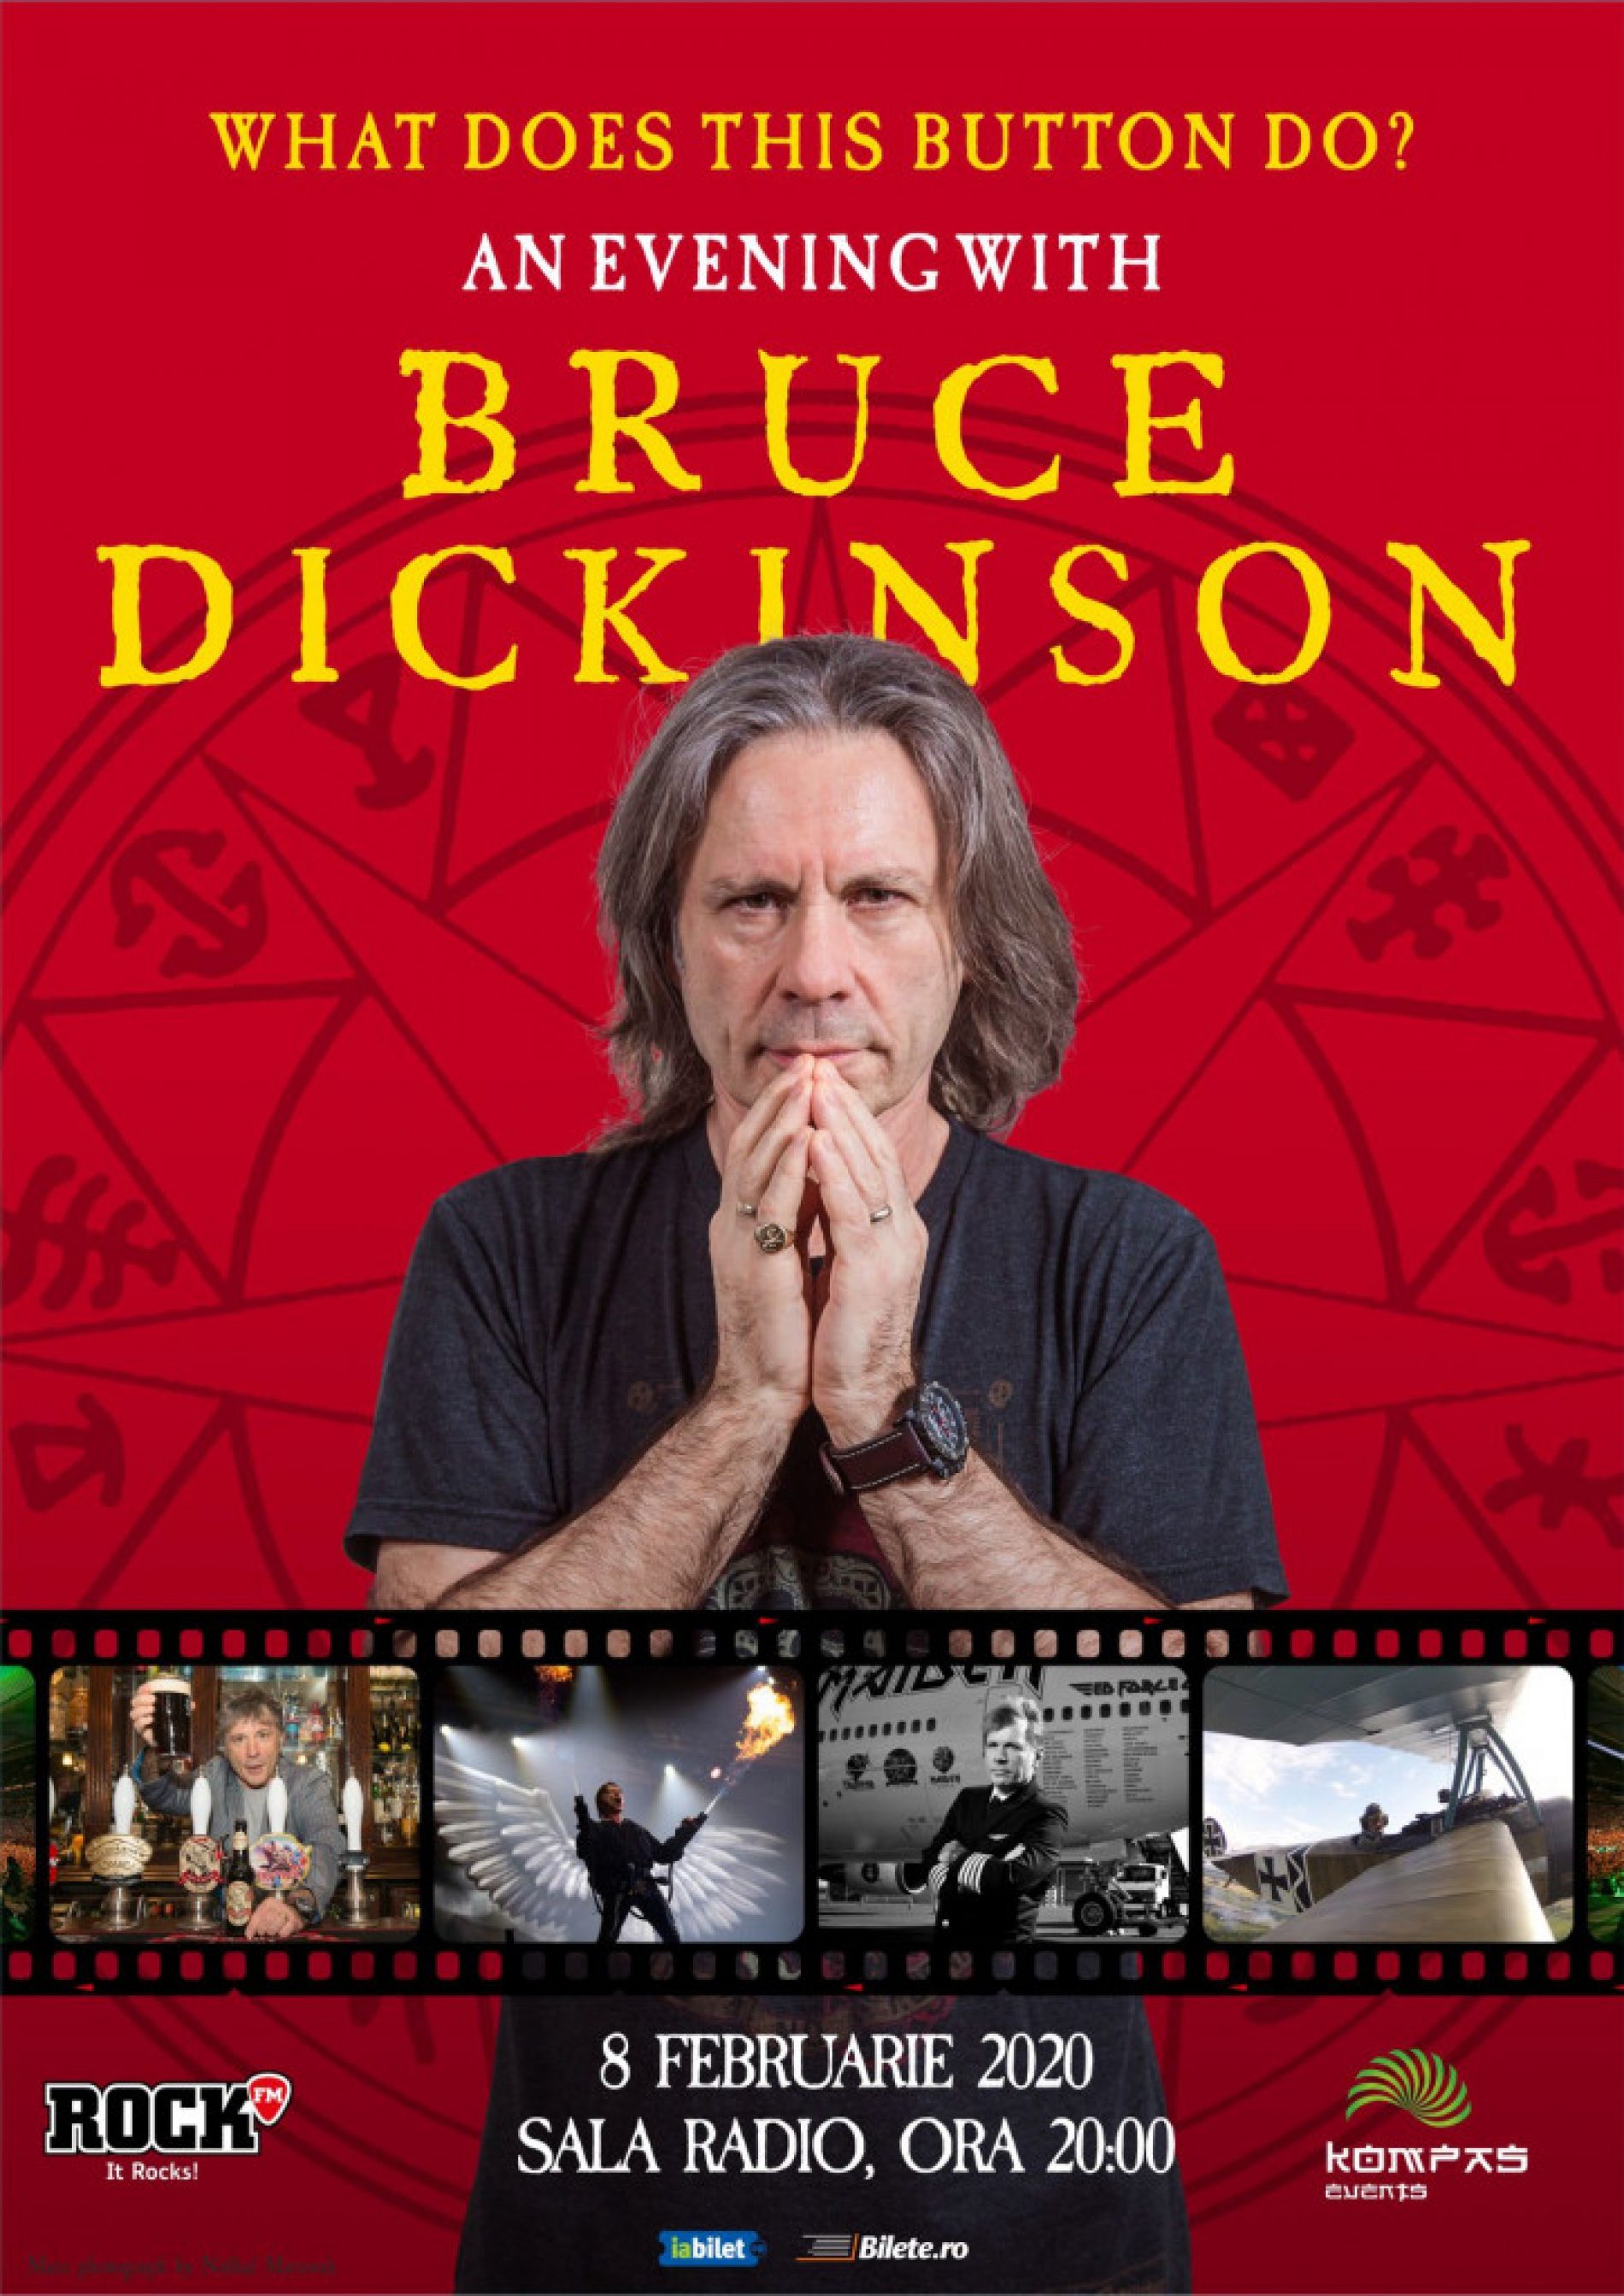 O primă categorie de bilete la evenimentul „An Evening with Bruce Dickinson” este sold-out